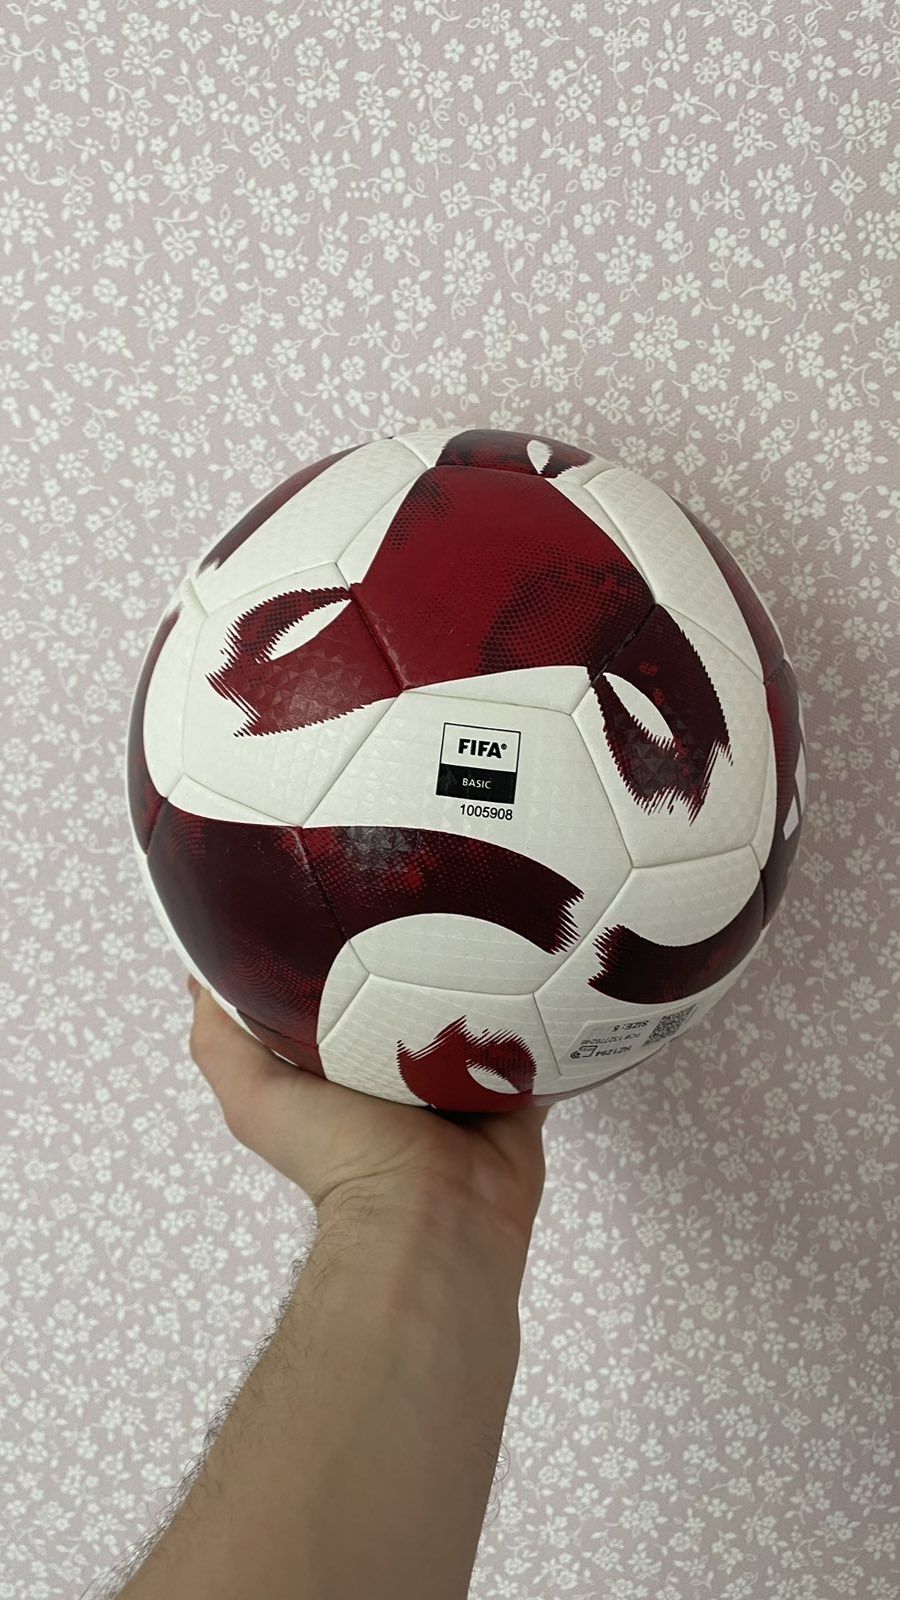 Футбольный мяч adidas tiro tb fifa basic